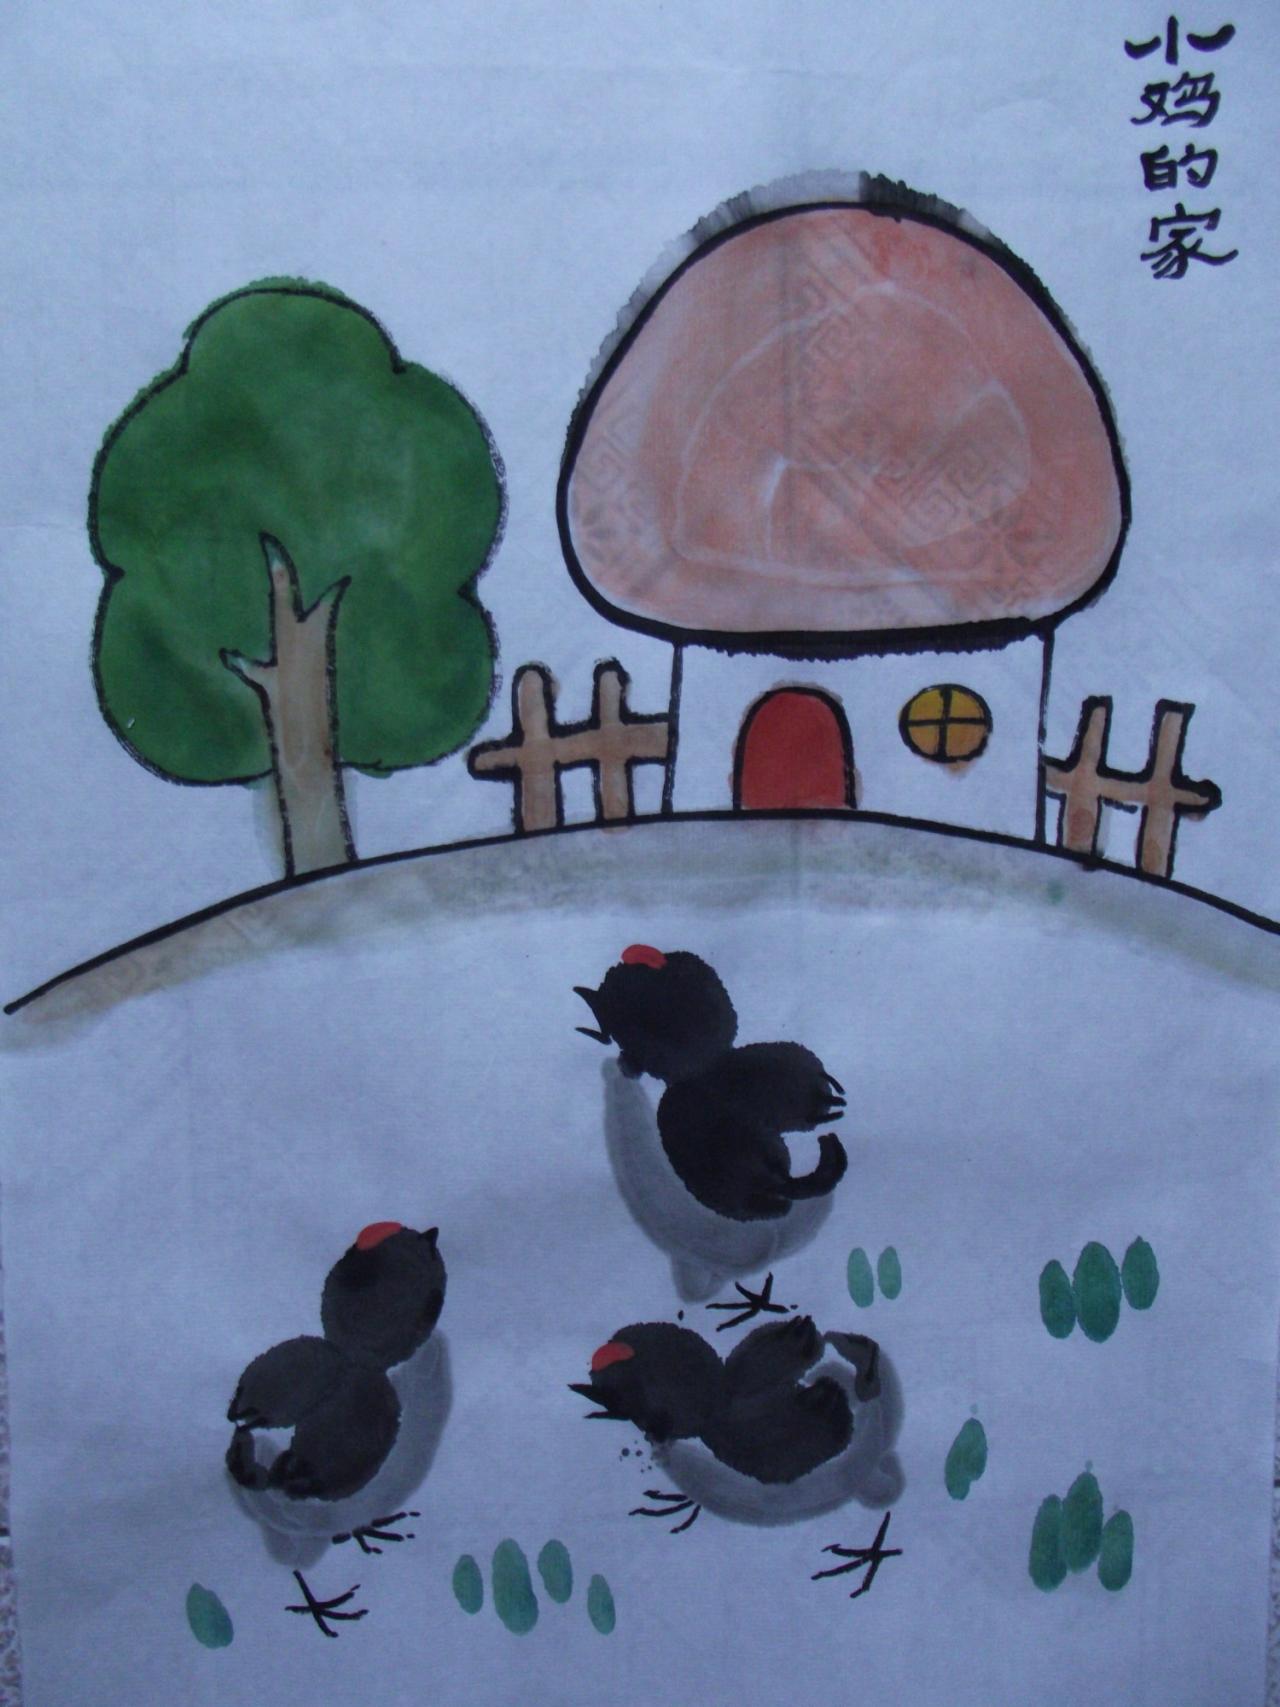 少儿学国画系列教程——小鸡的画法完成稿